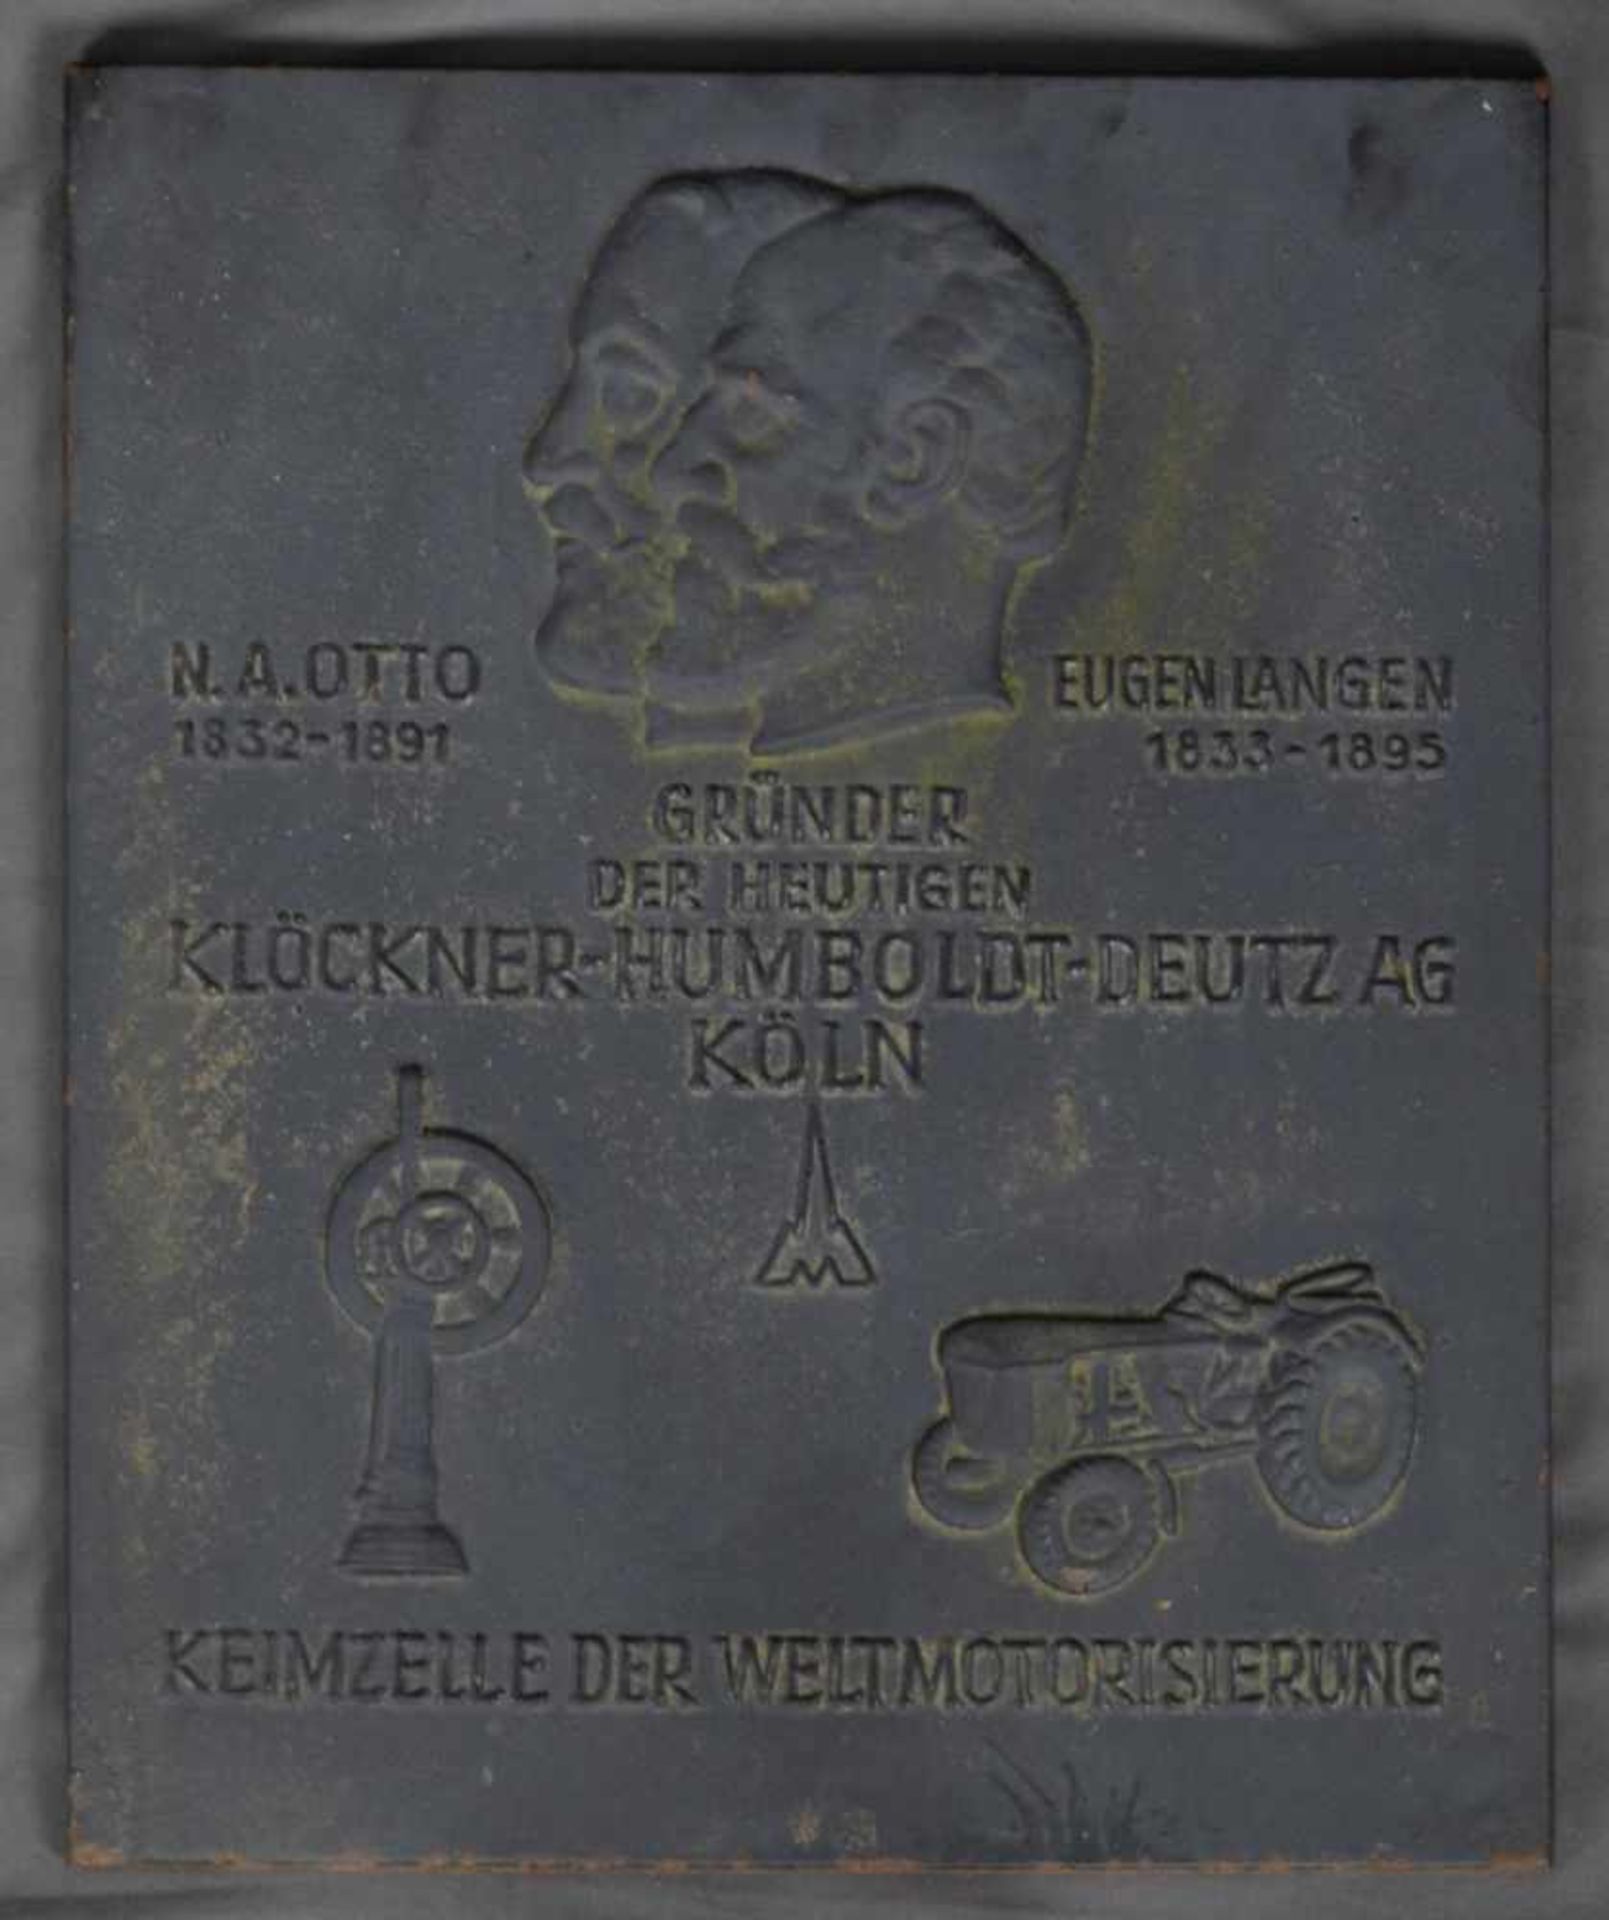 Gedenktafel. Eisen/Stahl, ca. 40 x 50 cm, bez. "N. A. OTTO & EUGEN LANGEN GRÜNDER DER HEUTIGEN